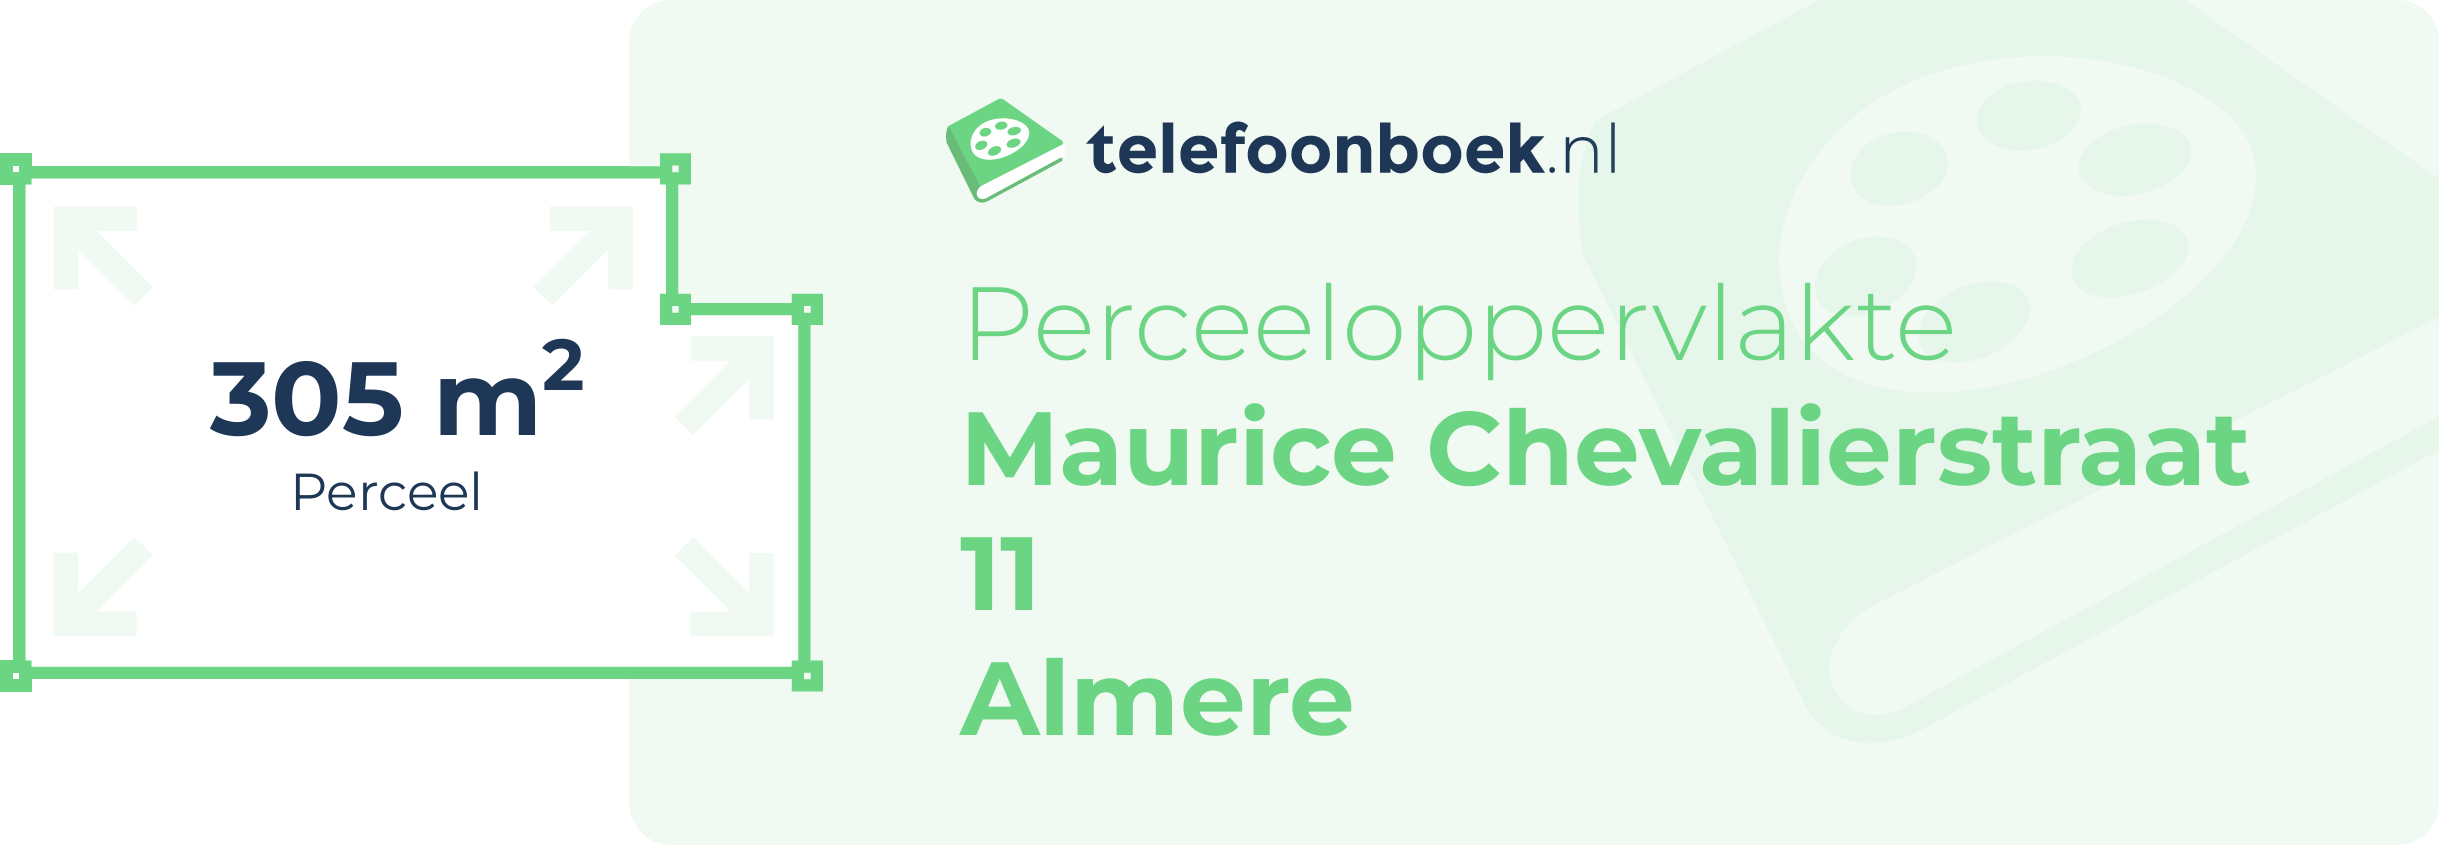 Perceeloppervlakte Maurice Chevalierstraat 11 Almere